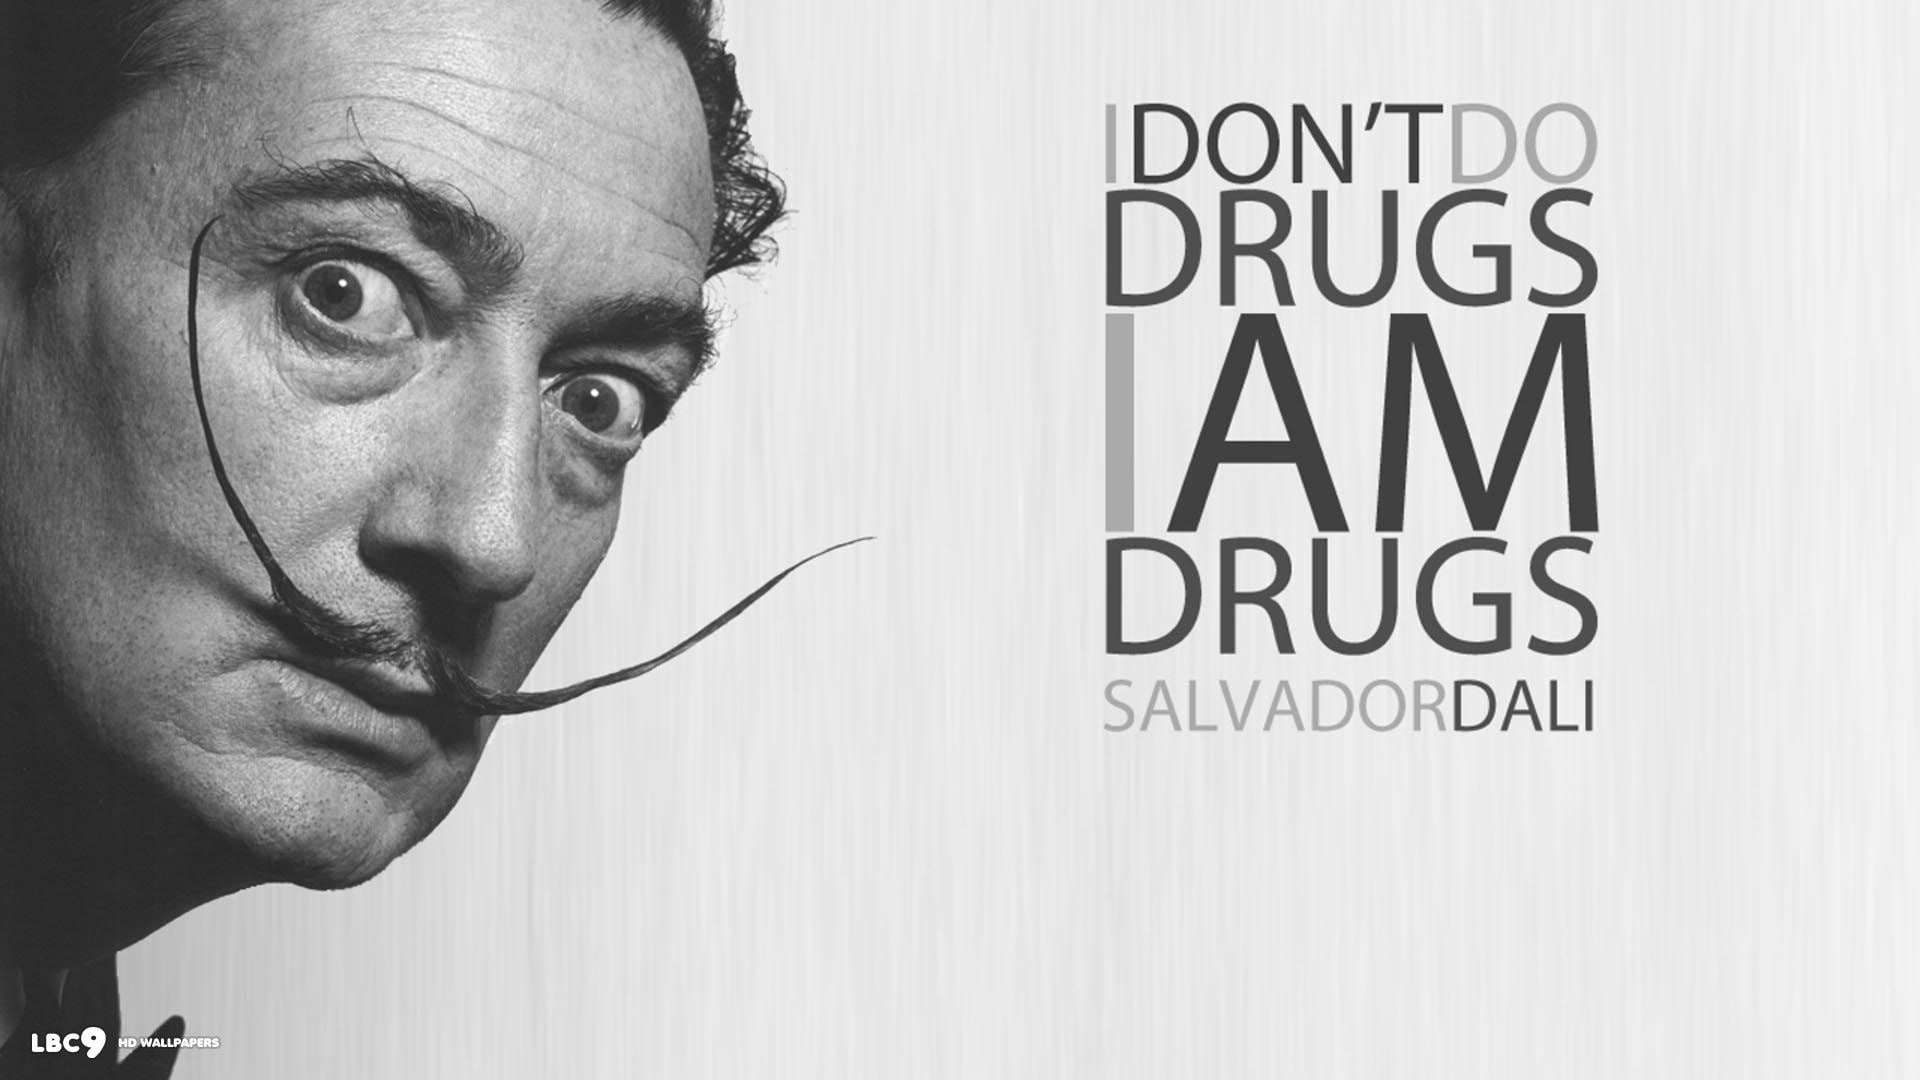 Clocks, drugs, fantasy Art, painting, Salvador Dalí, skull